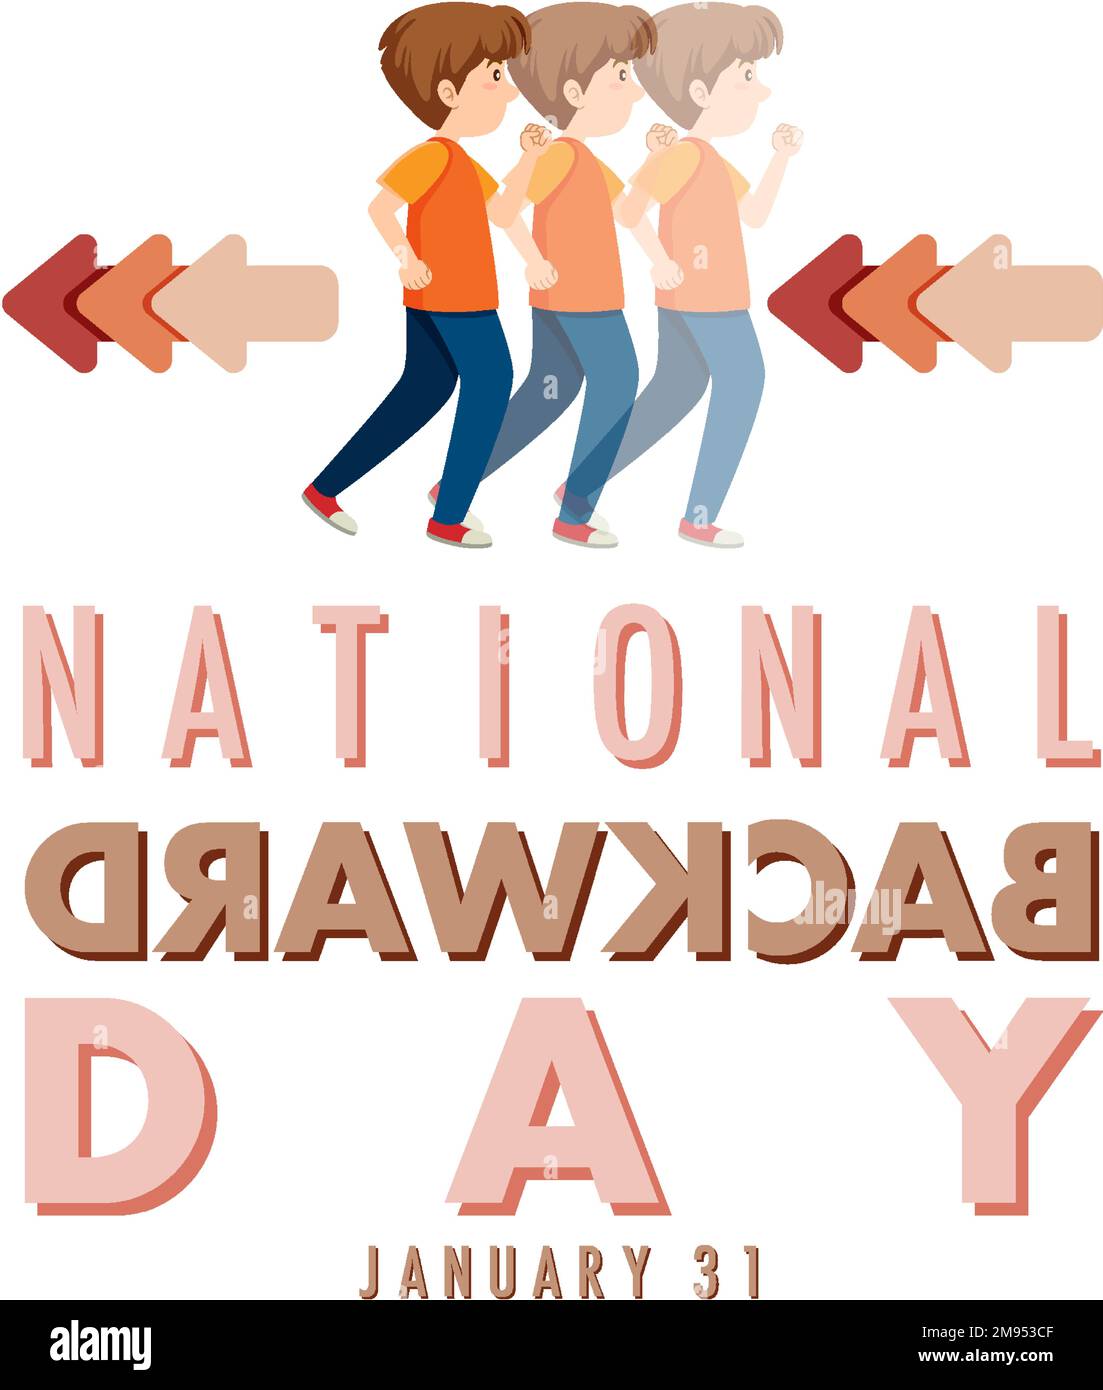 National backward day banner design illustration Stock Vector Image